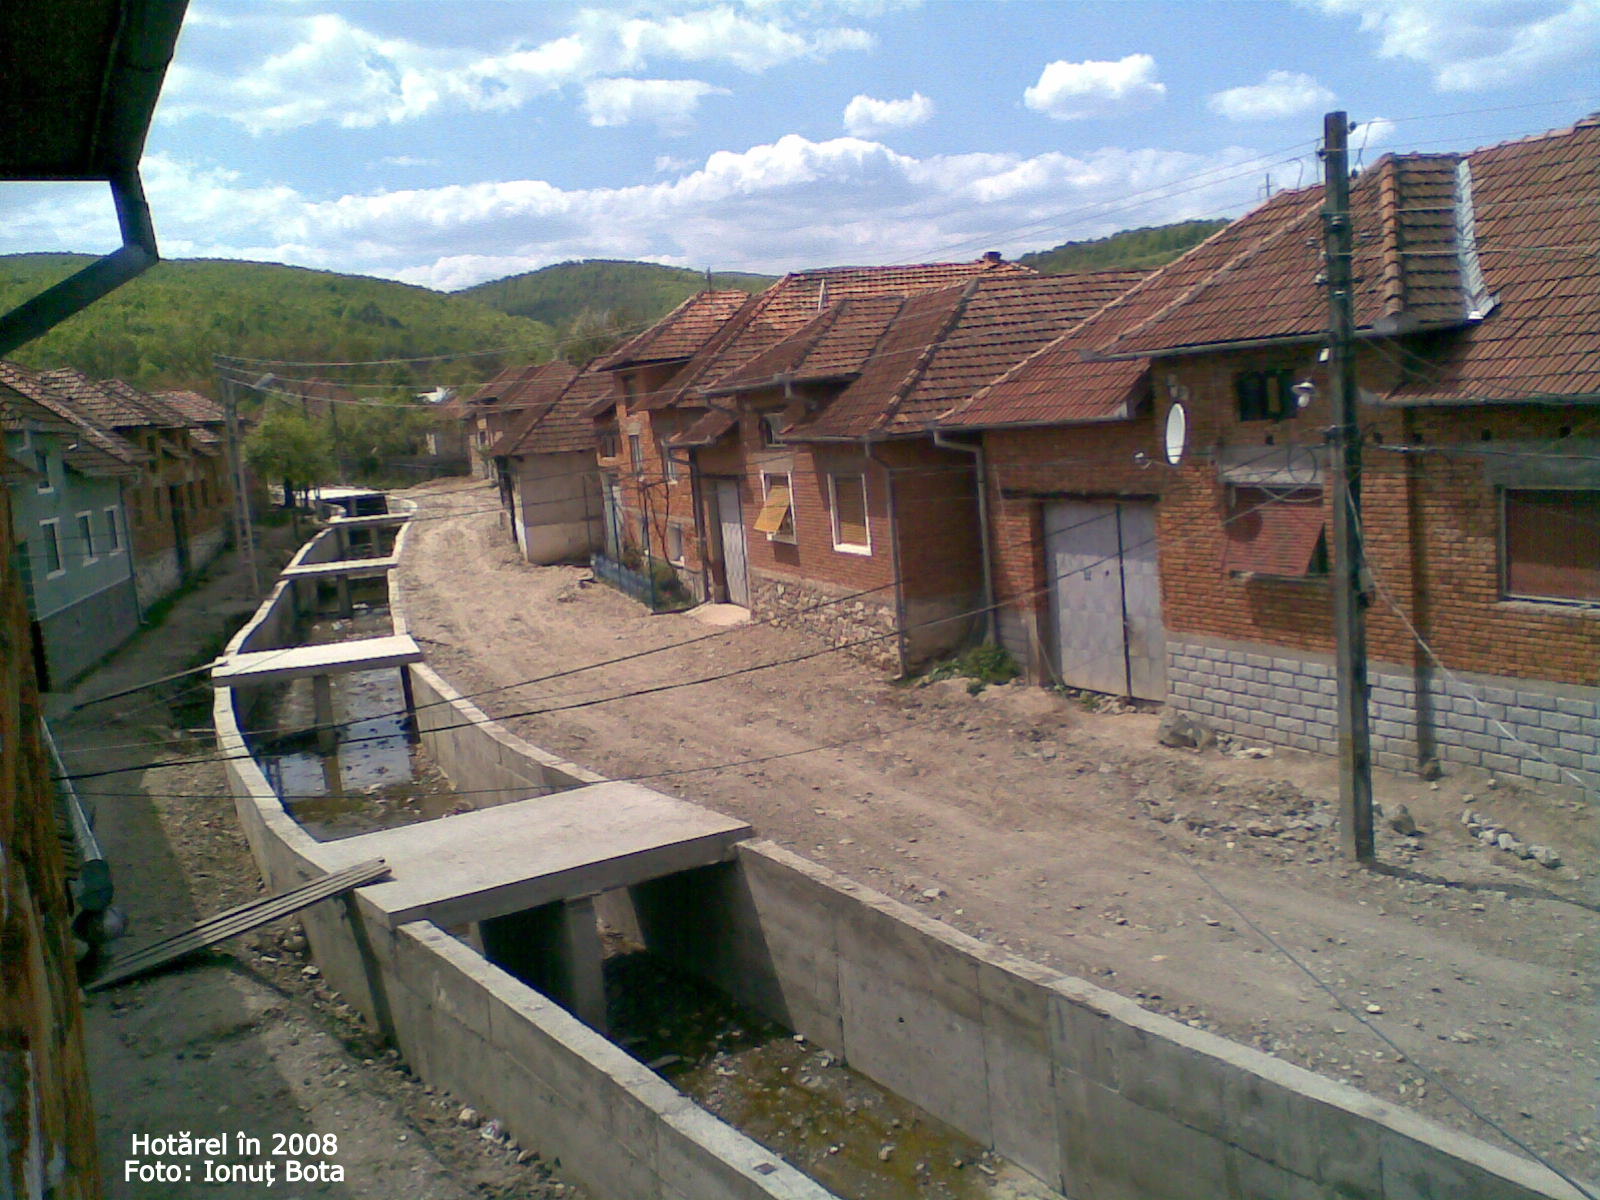 Hotarel, Bihor, Romania in 2008 ; satul Hotarel comuna Lunca judetul Bihor Romania